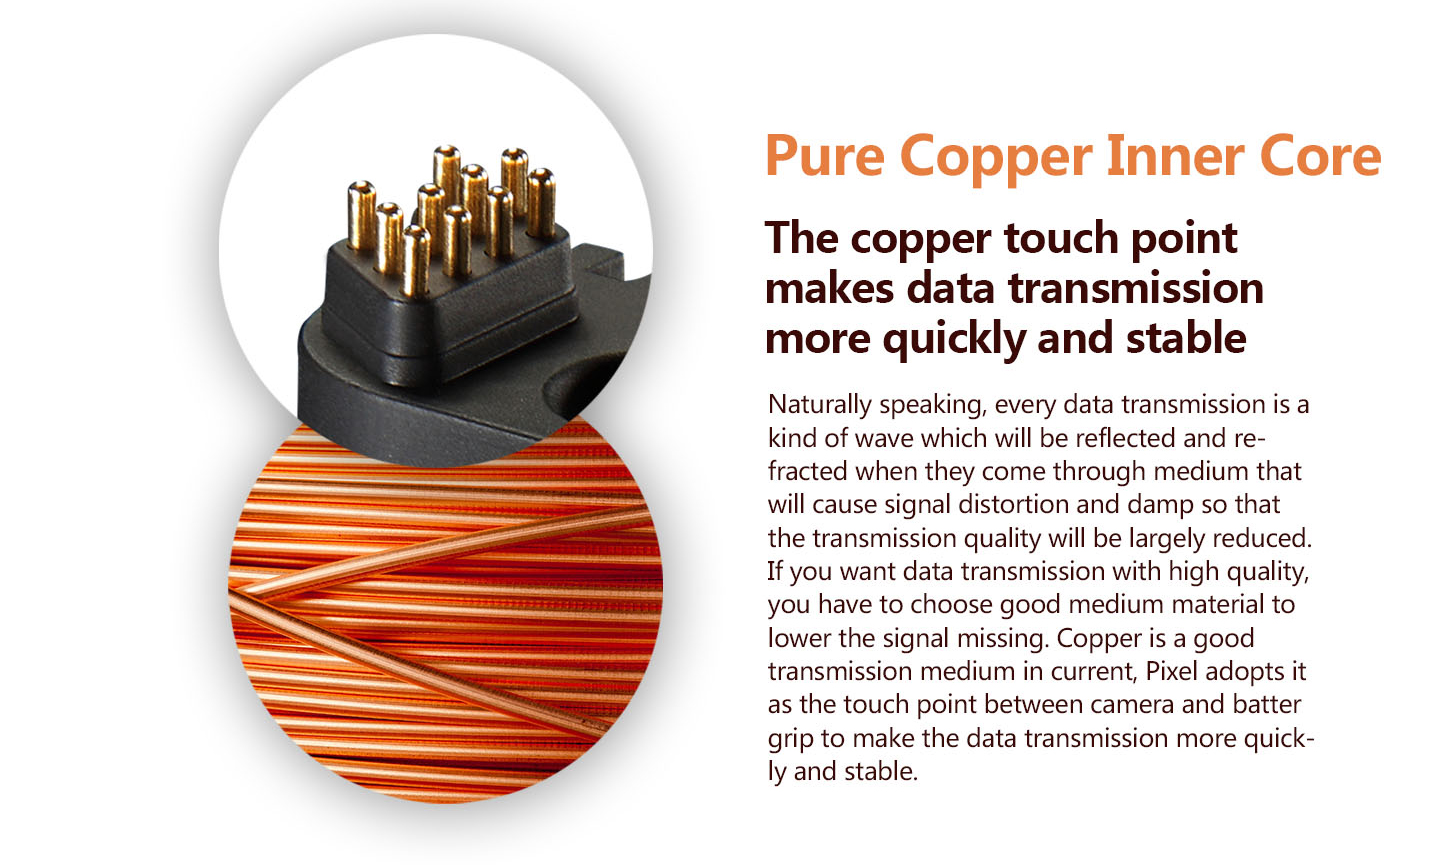 Pure Copper lnner Core